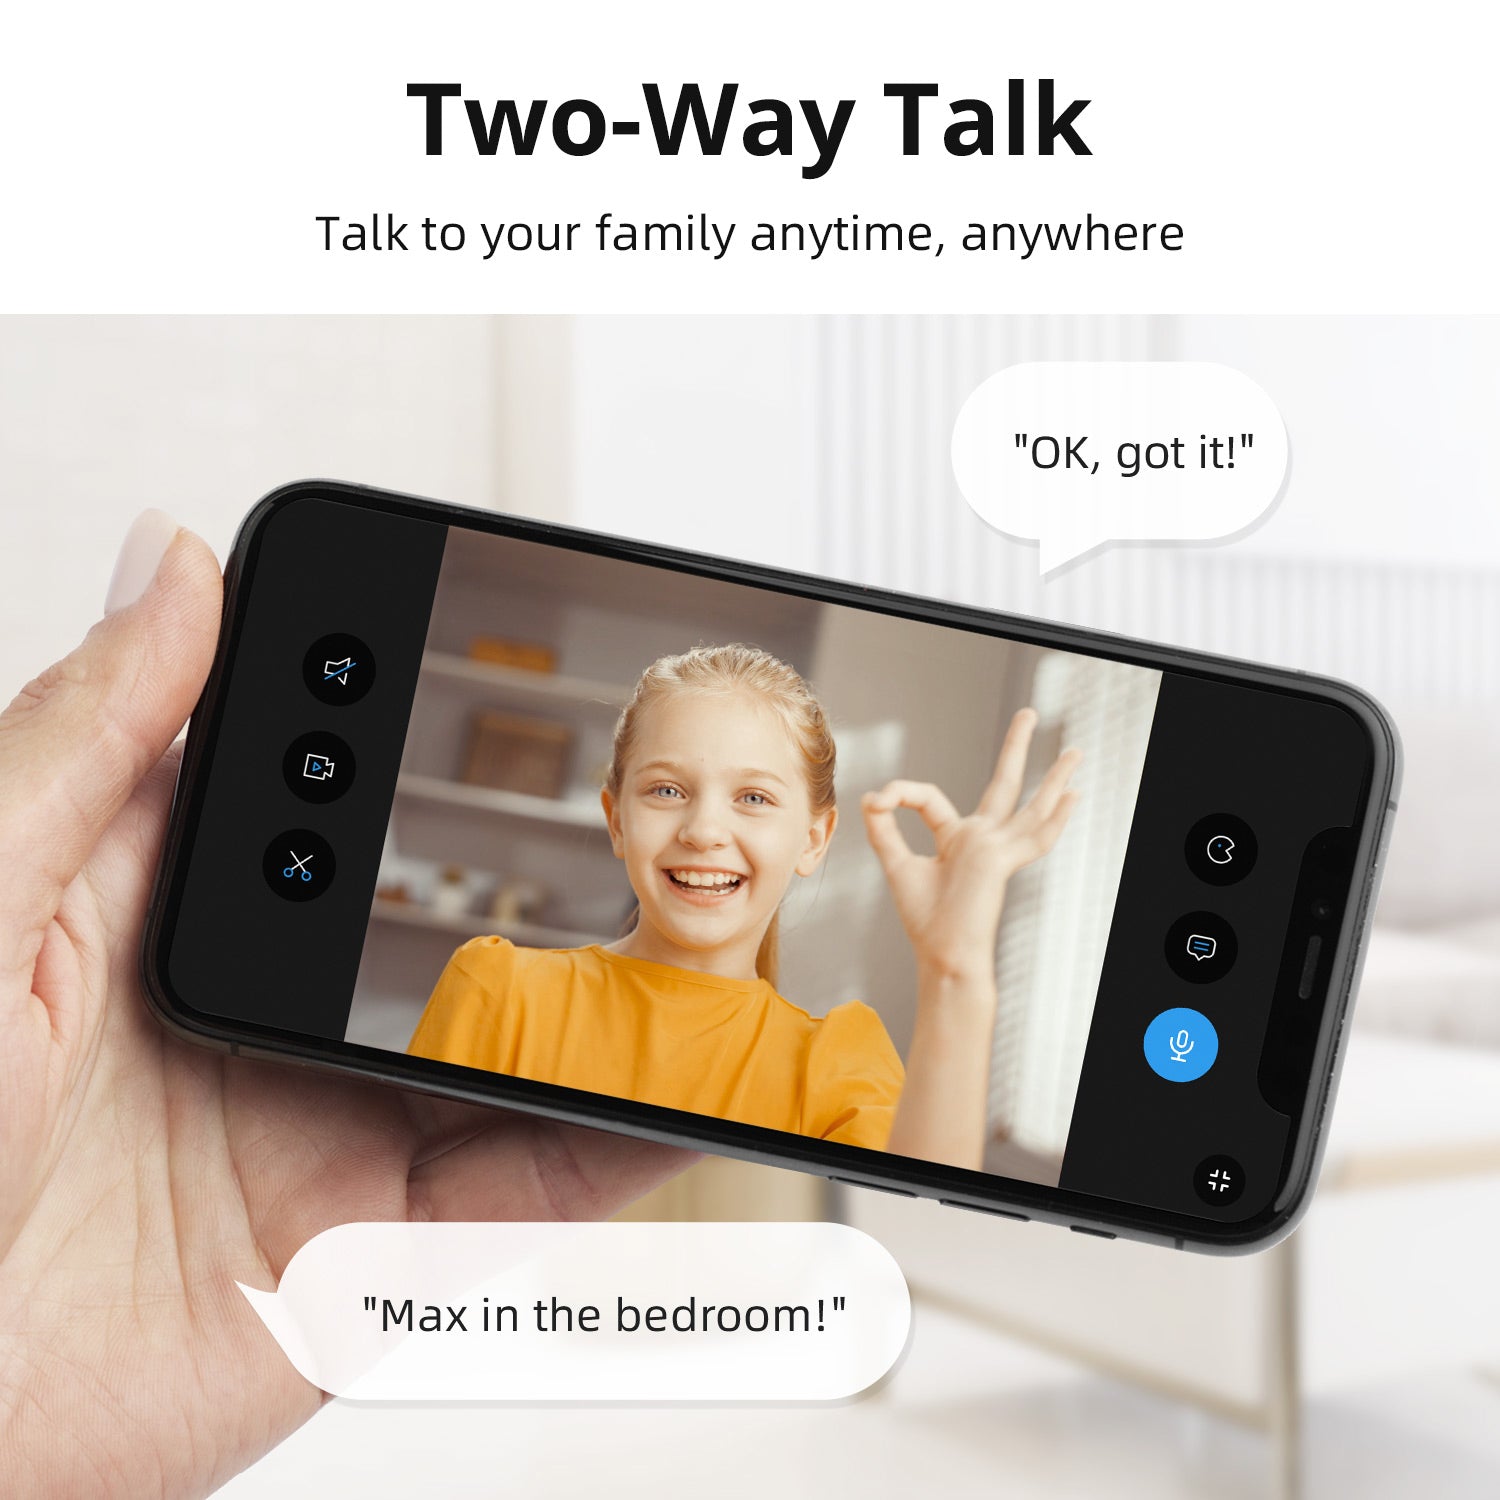 IndoorCam P1 features two-way talk